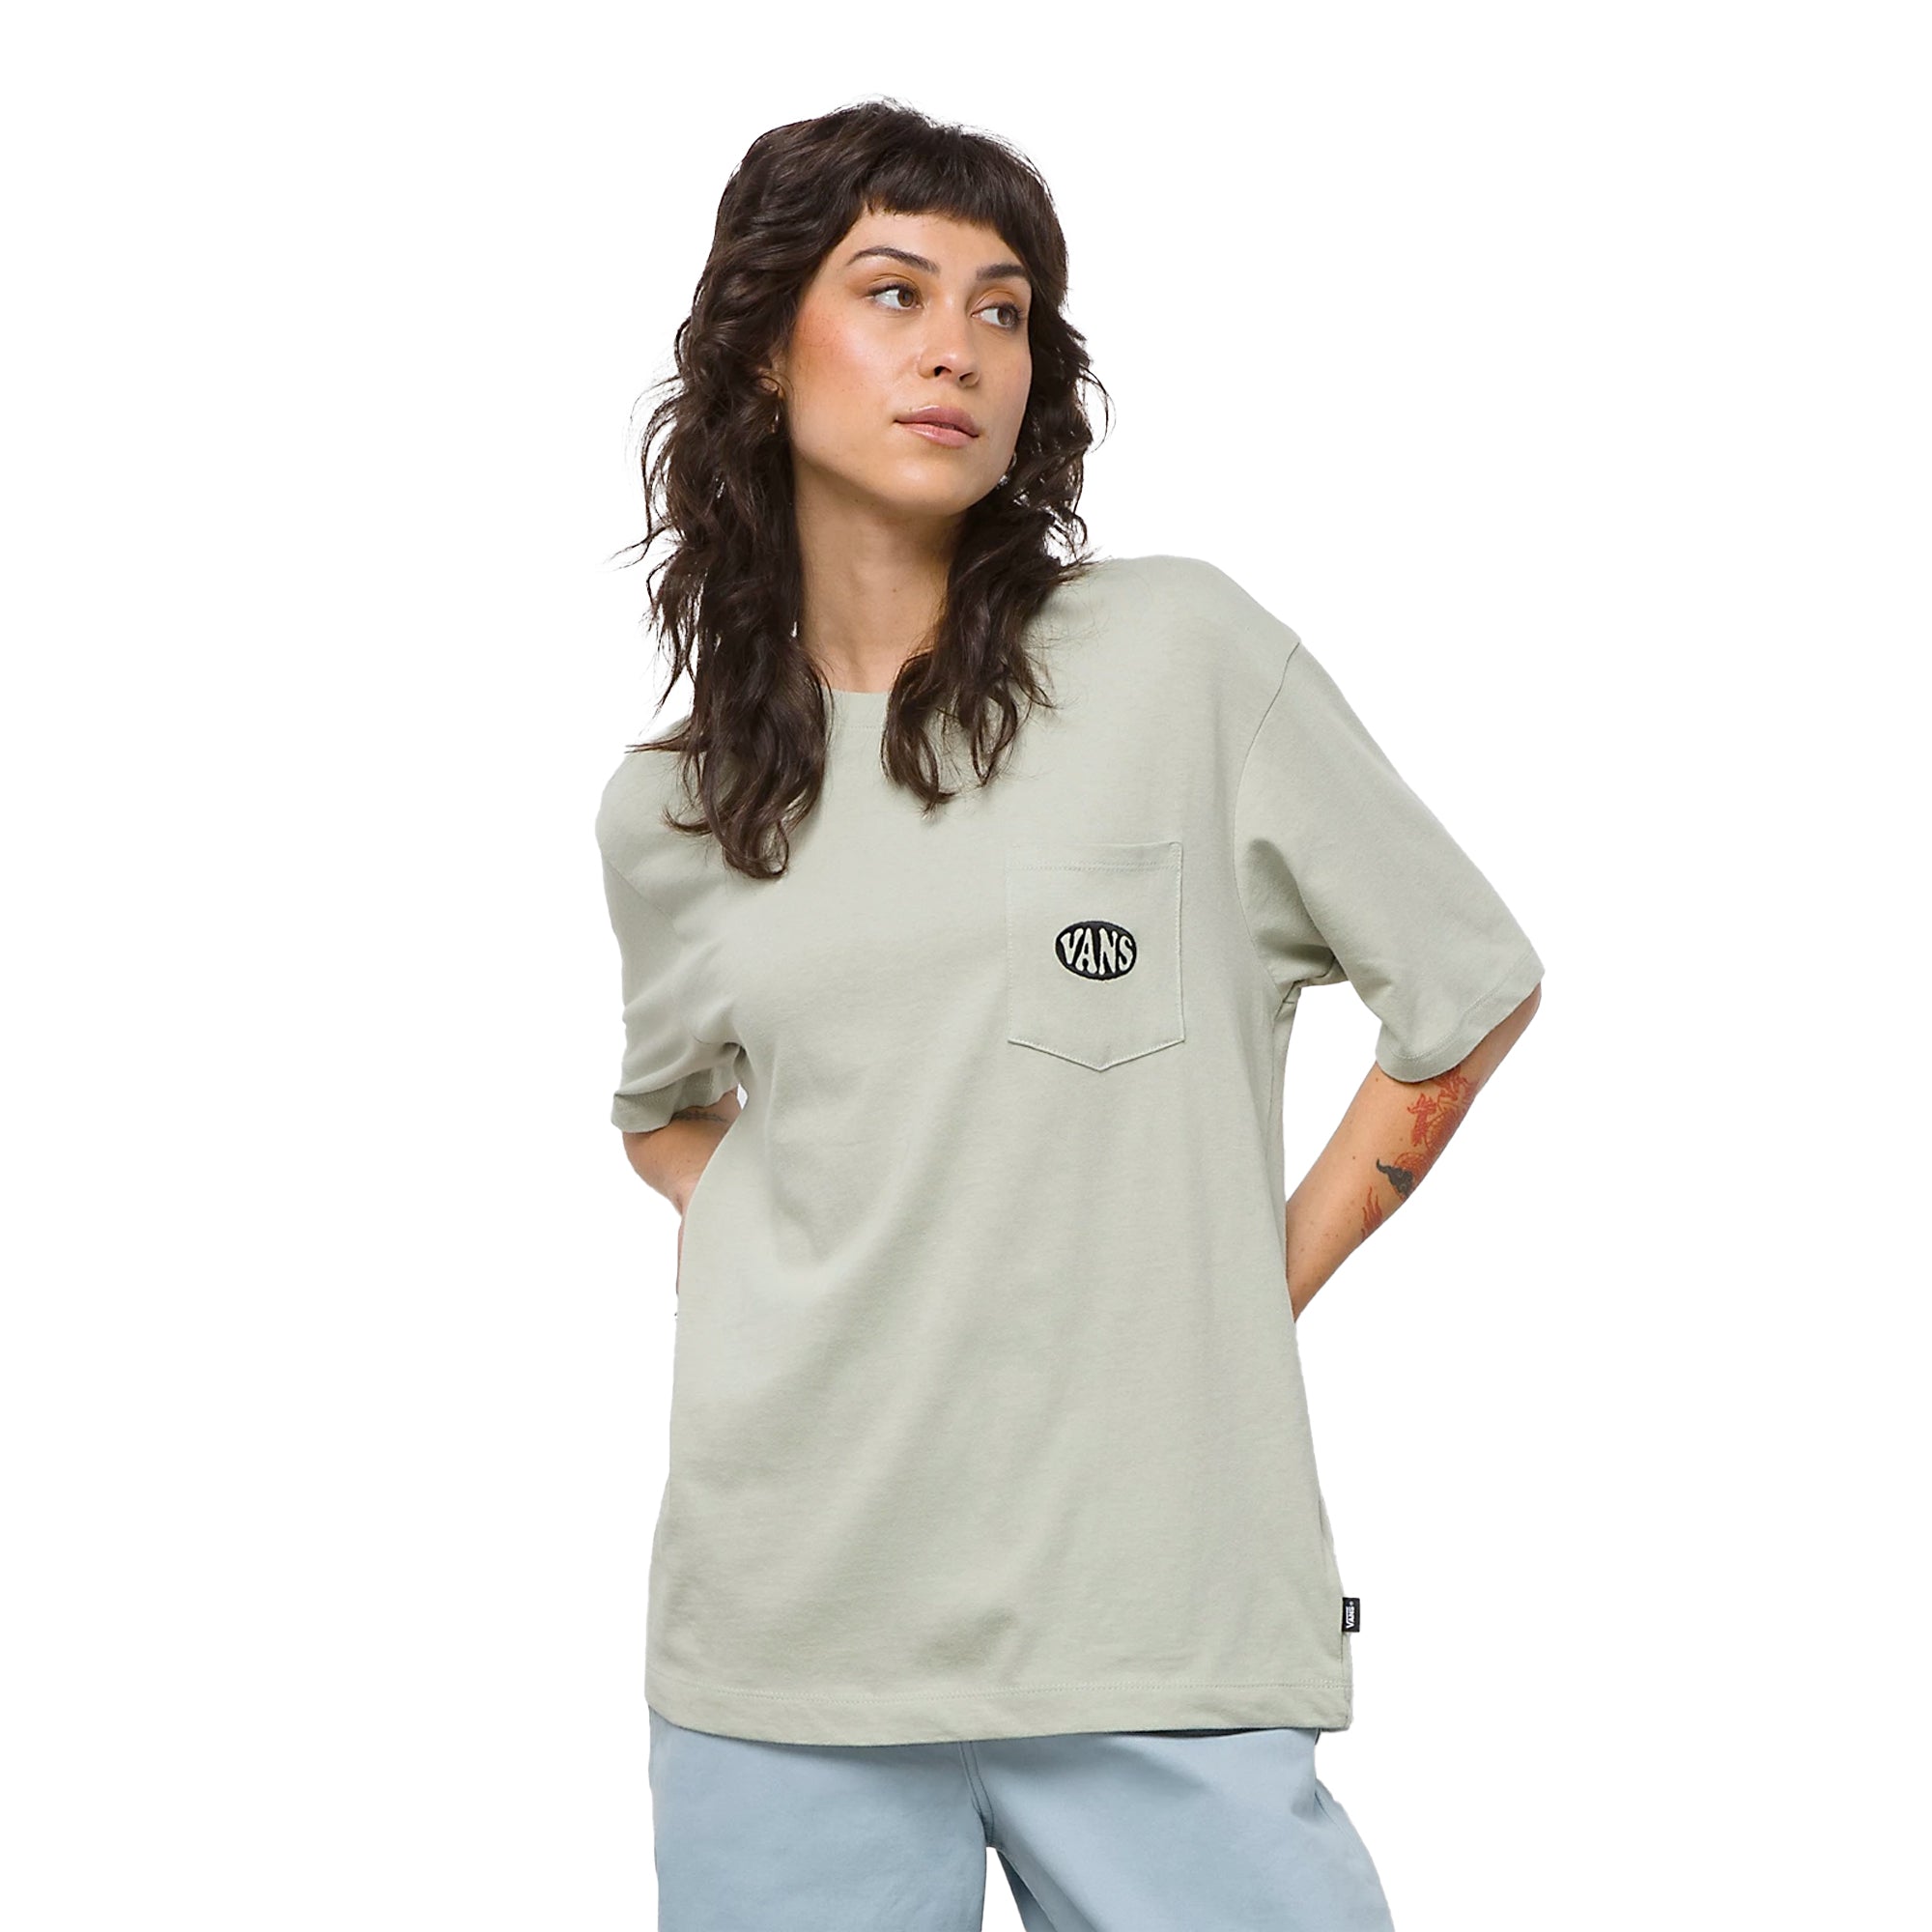 Vans Judiff Desert Women's S/S T-Shirt